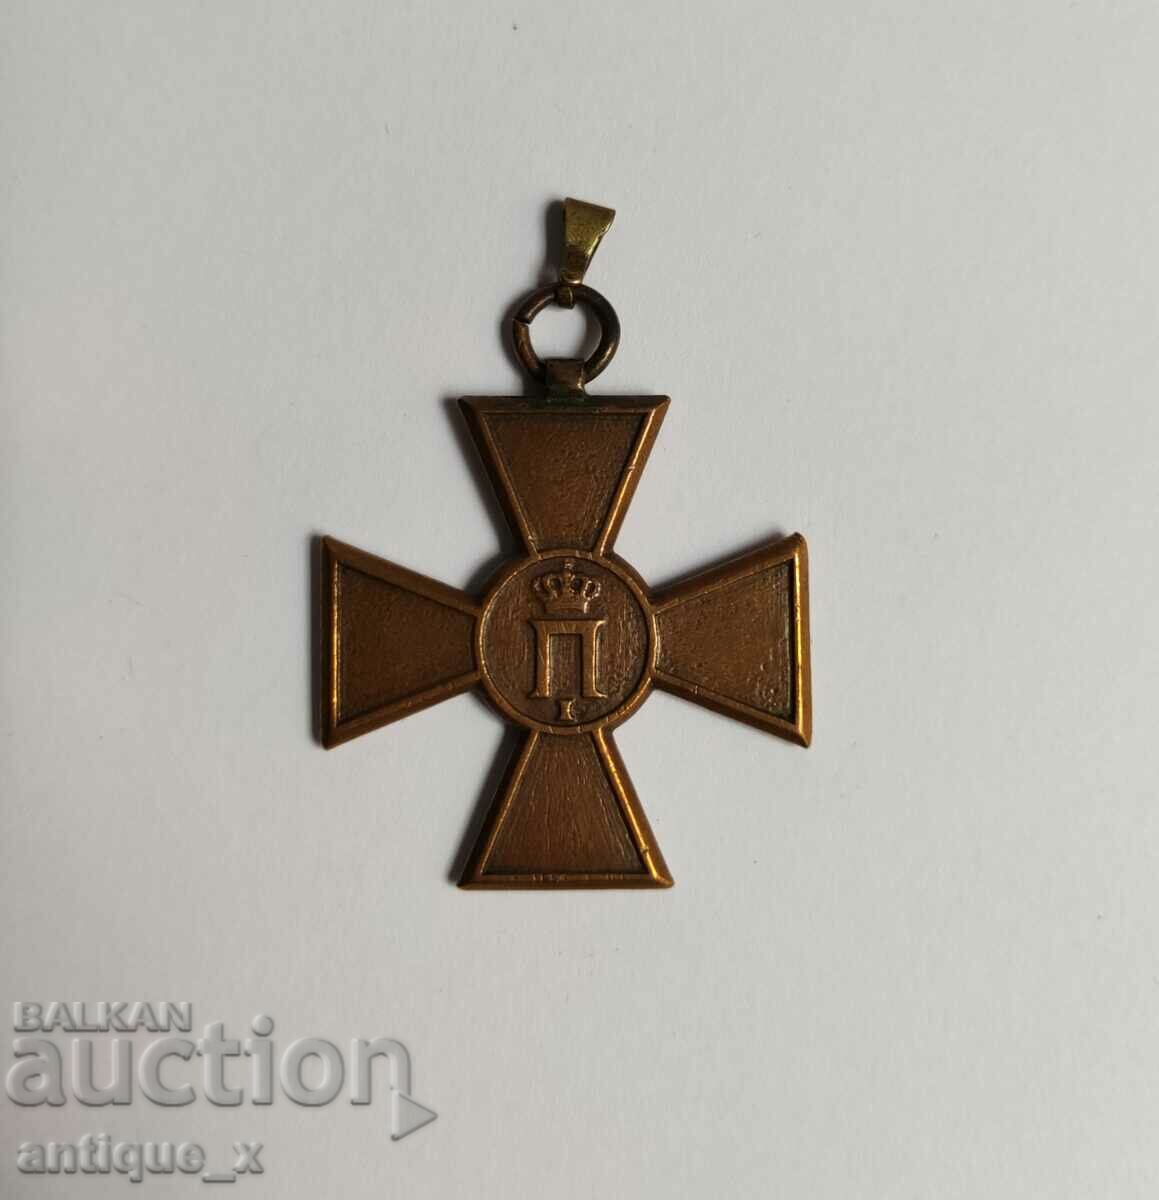 Σερβικός σταυρός/μετάλλιο συμμετοχής στον Βαλκανικό Πόλεμο-1913.